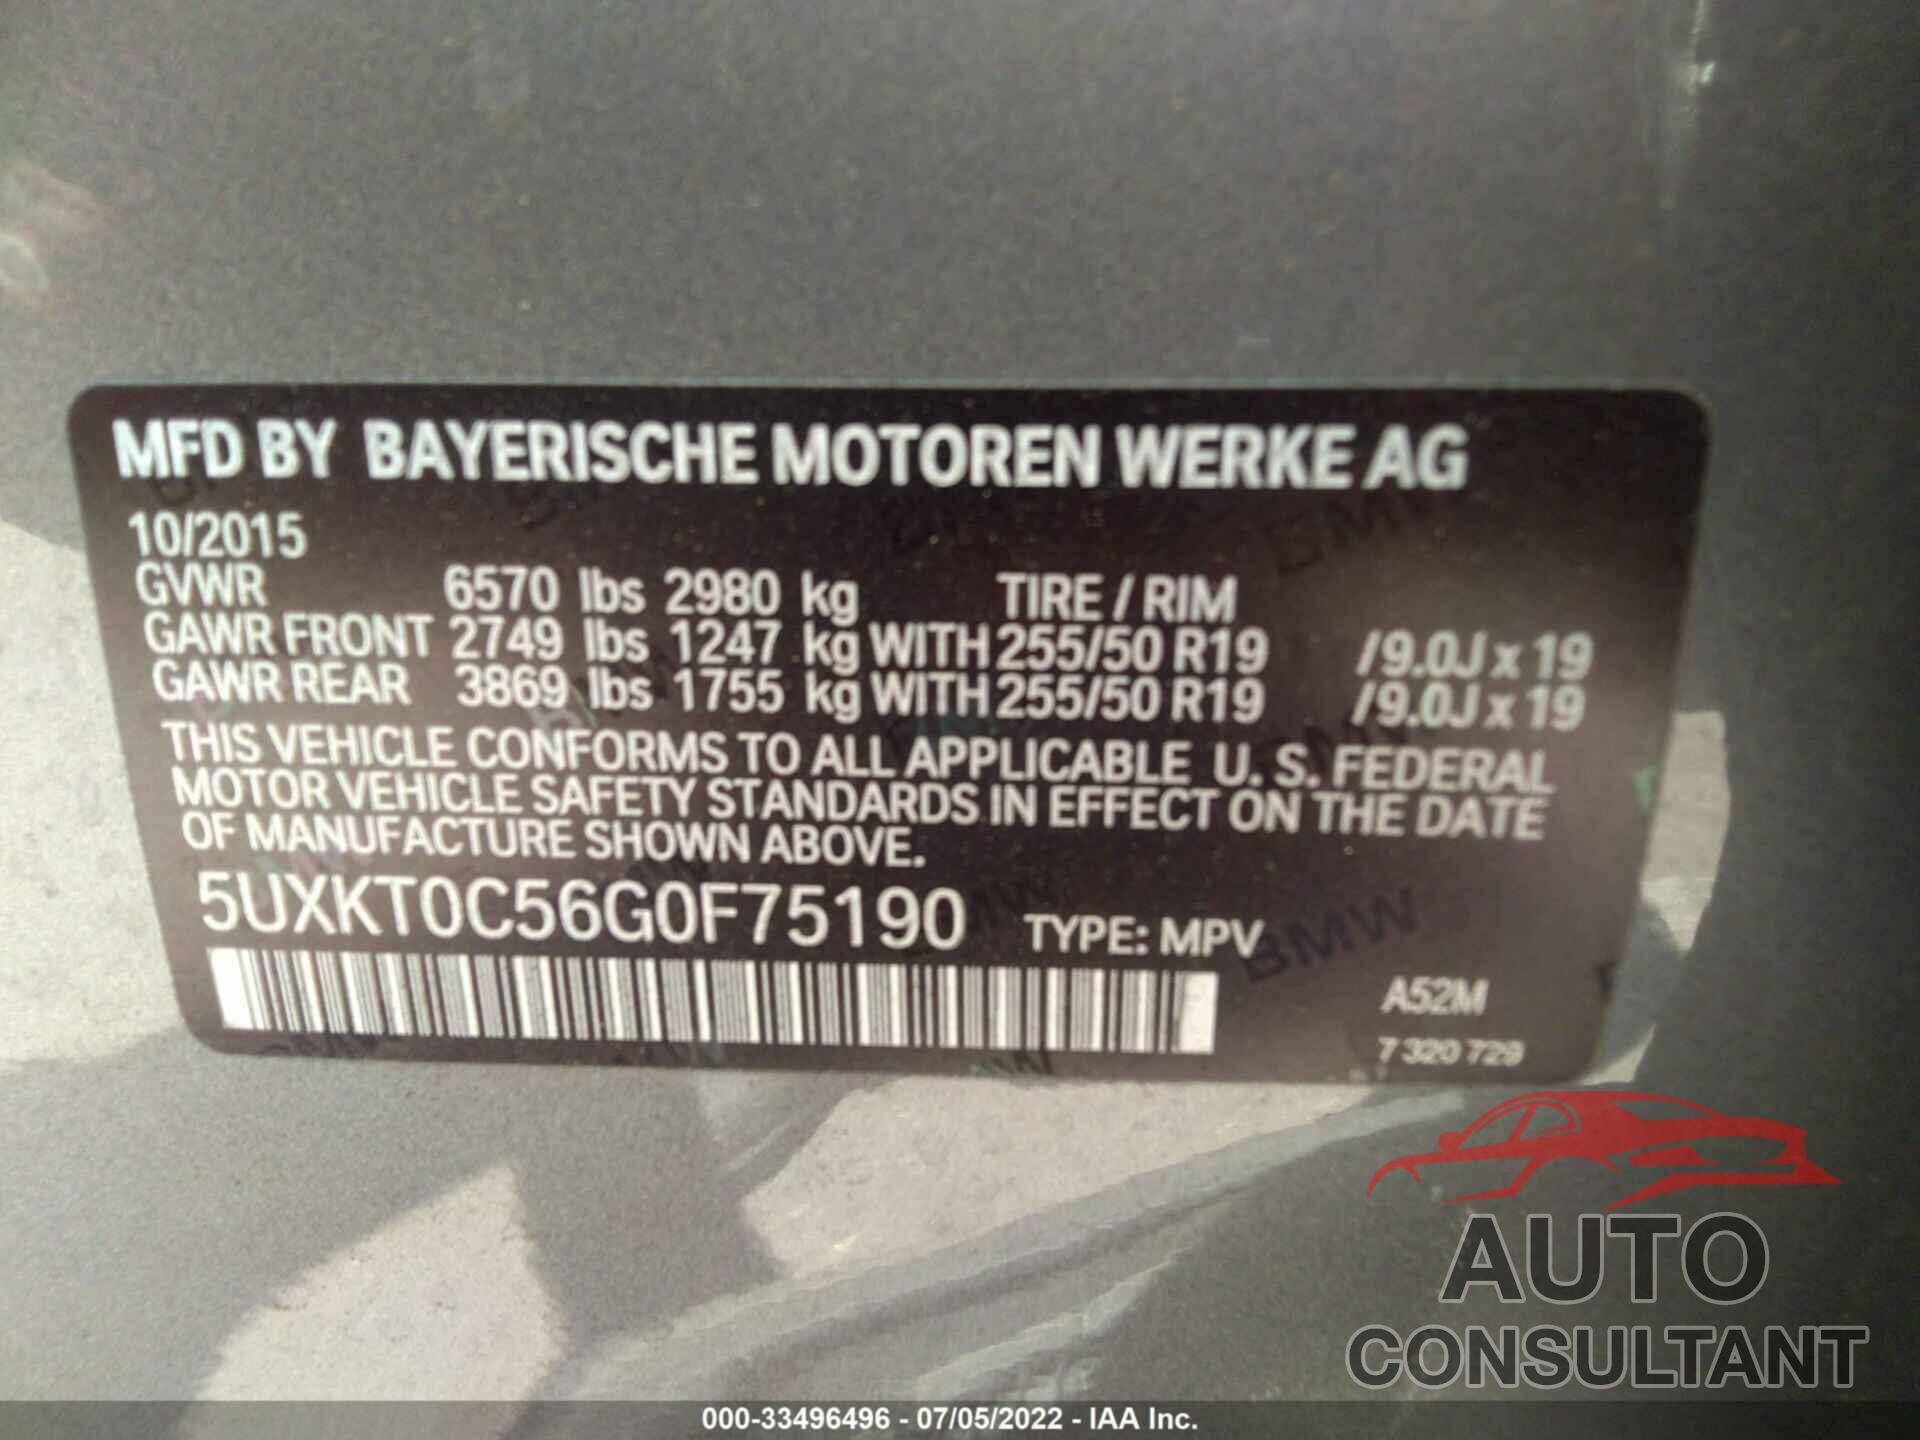 BMW X5 EDRIVE 2016 - 5UXKT0C56G0F75190